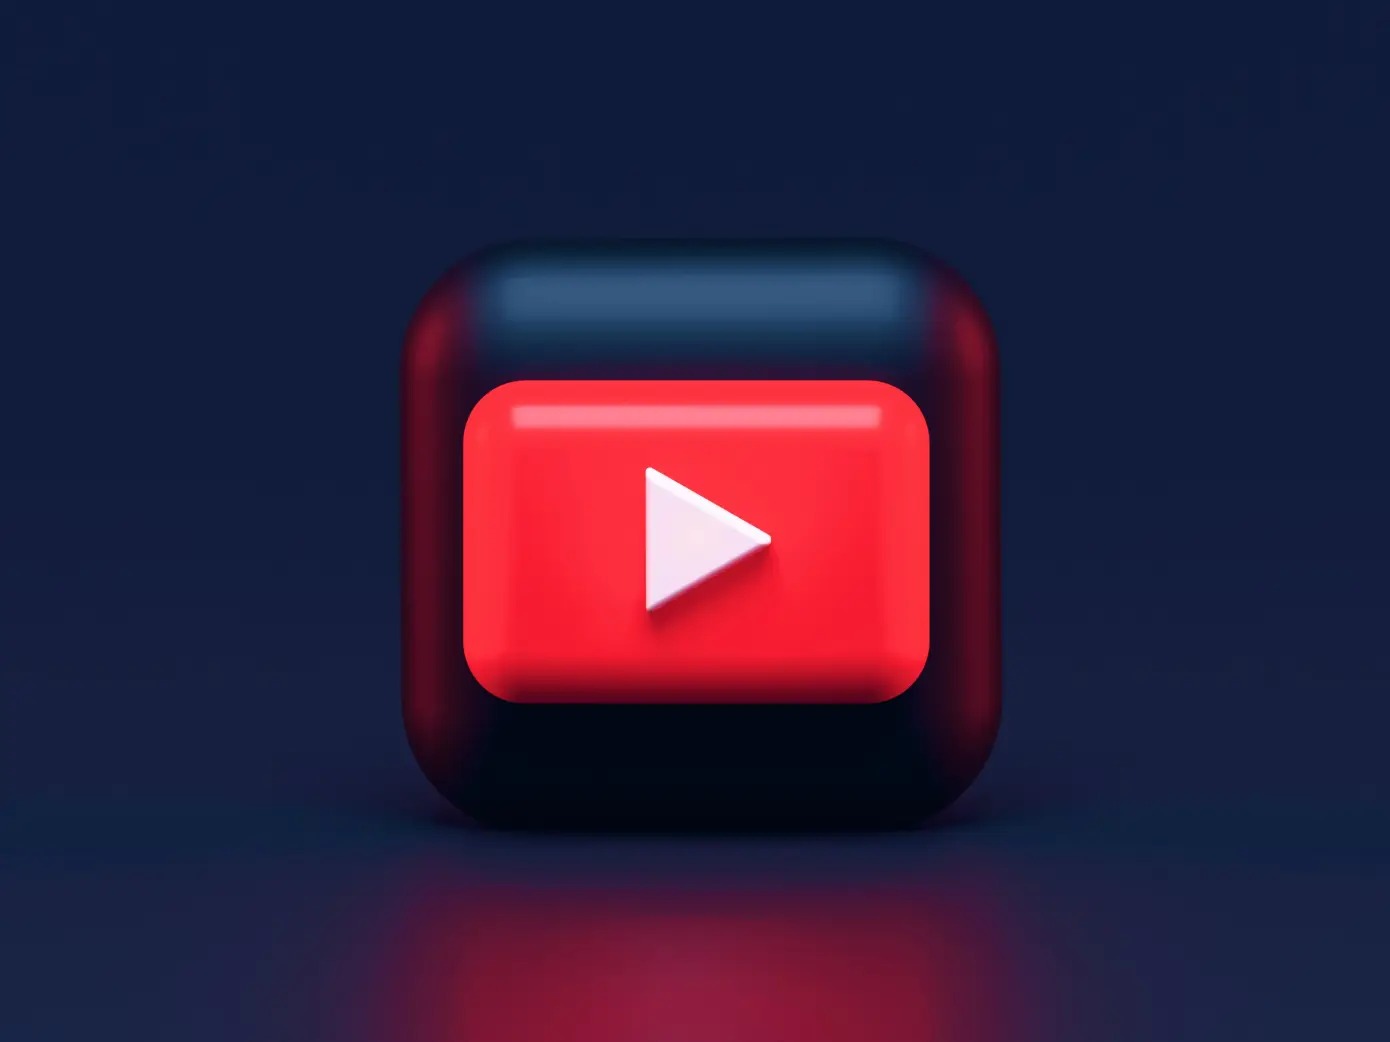 Google thông báo YouTube Premium và YouTube Music đã đạt hơn 100 triệu người đăng ký Dịch vụ doanh thu Google Google Nest sản phẩm Sunda Pichai thông tin YouTube Music YouTube Premium